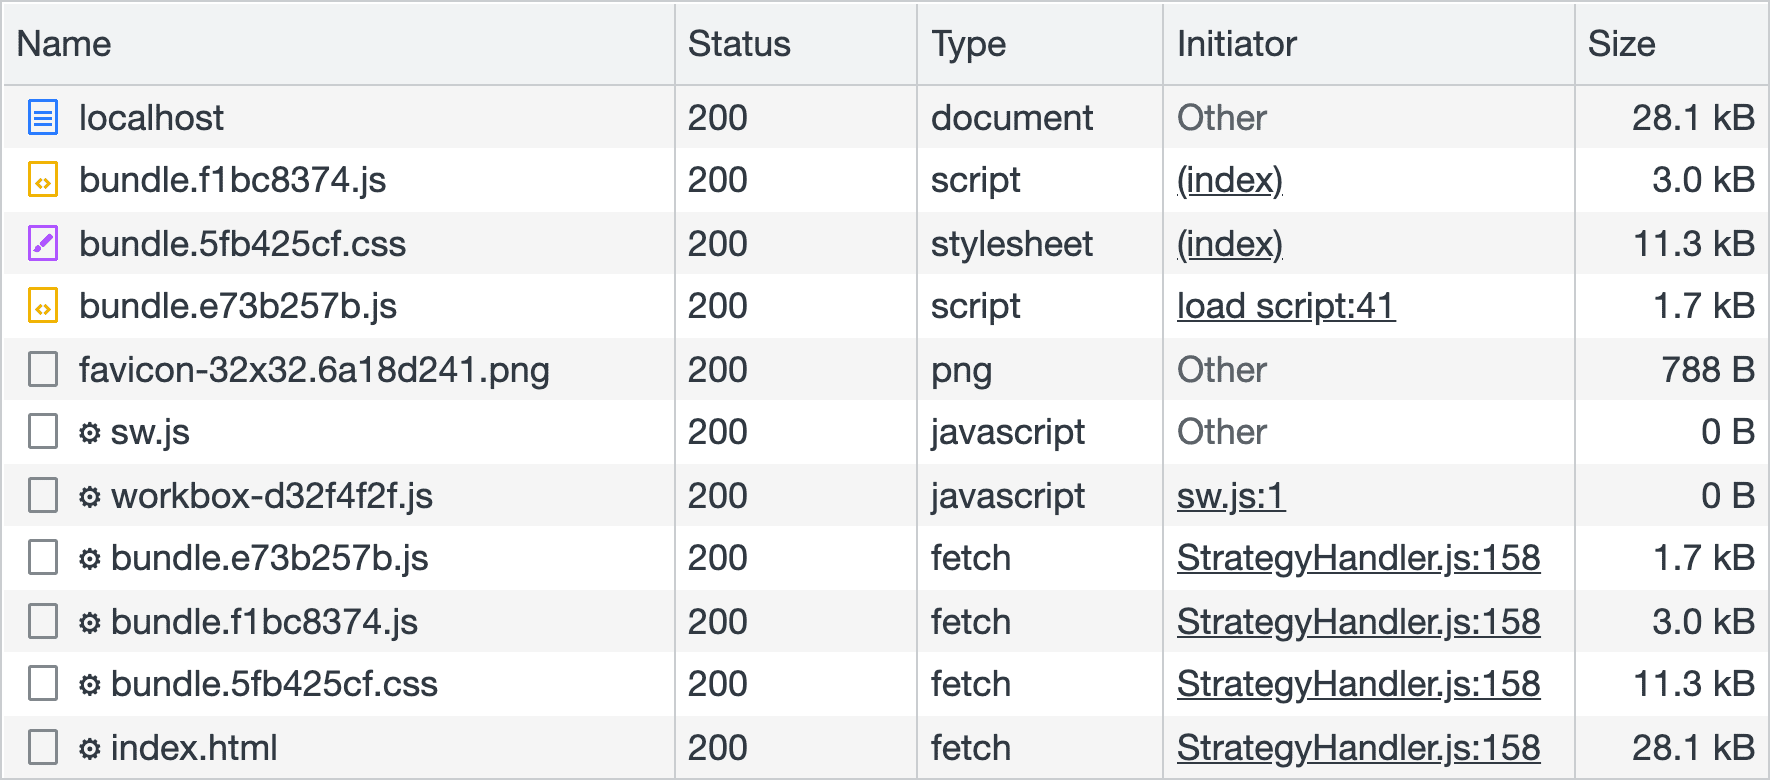 ネットワークからダウンロードしたアセットのリストが表示されている、Chrome の DevTools のネットワーク パネルのスクリーンショット。Service Worker によって事前キャッシュされたアセットは、行の左側に歯車が表示されて他のアセットと区別されます。JavaScript ファイルと CSS ファイルは、インストール時に Service Worker によって事前キャッシュされます。